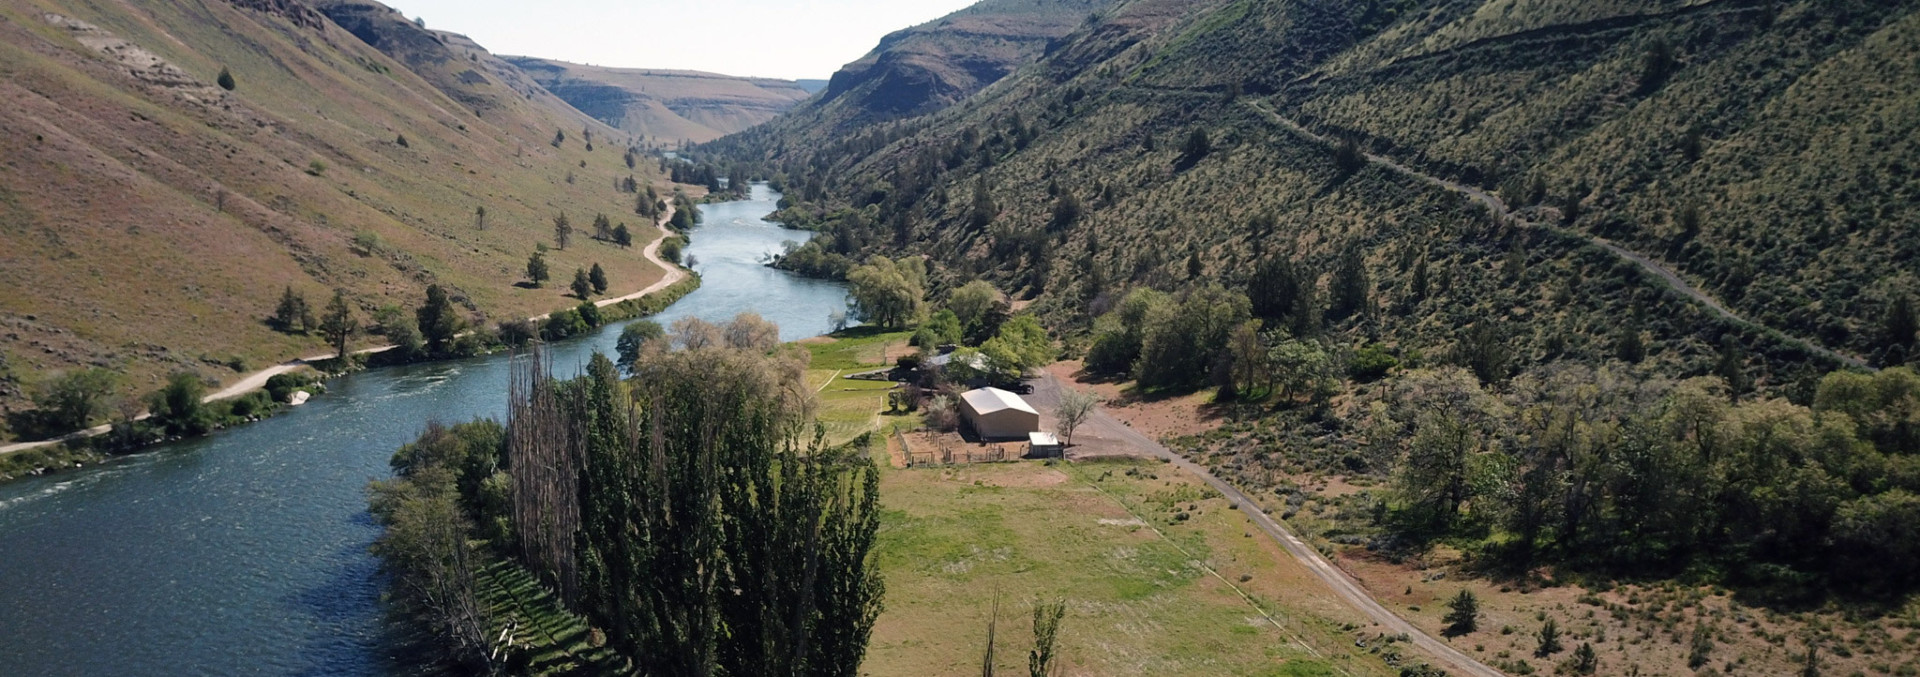 Oregon Ranch For Sale Luelling Ranch Deschutes River